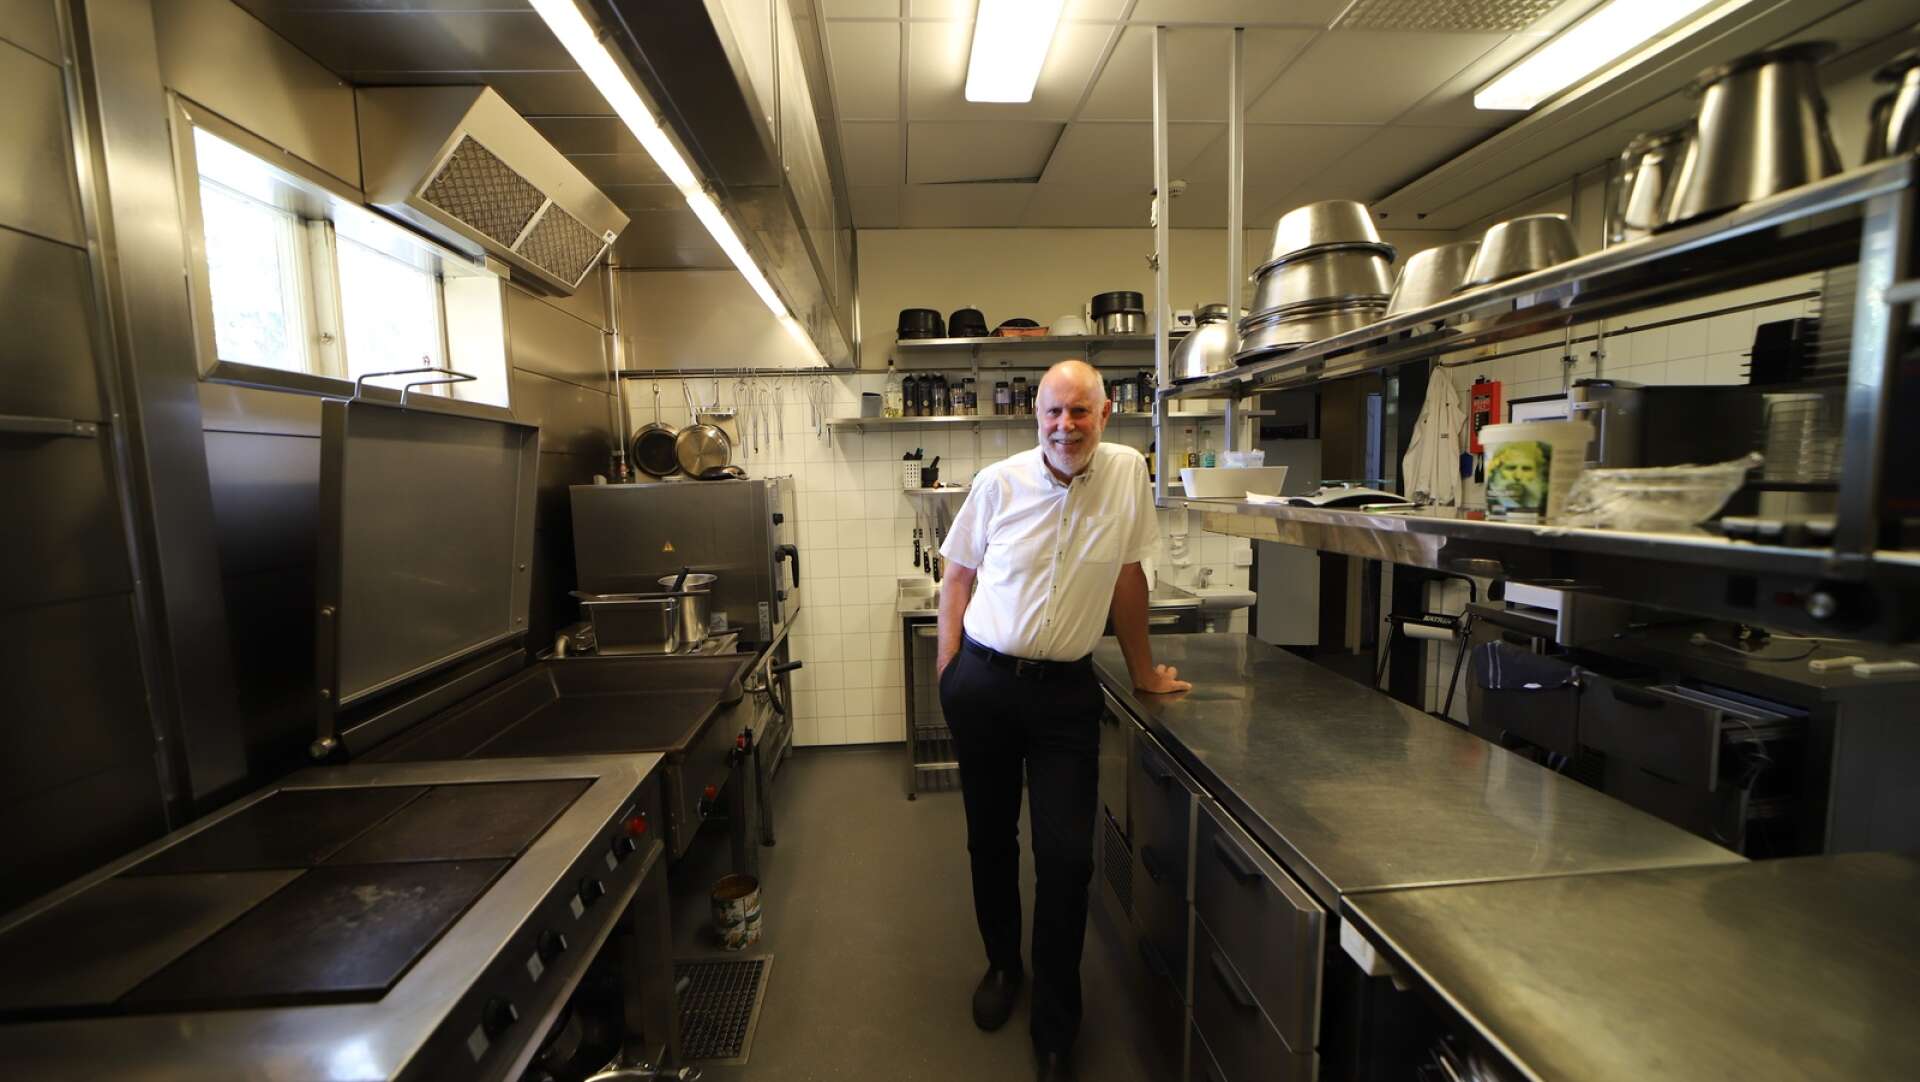 Köket är rymligt och välutrustad, säger Finn Brynhildsen, som nu vill arrendera ut den delen av Hotell Dalsland.